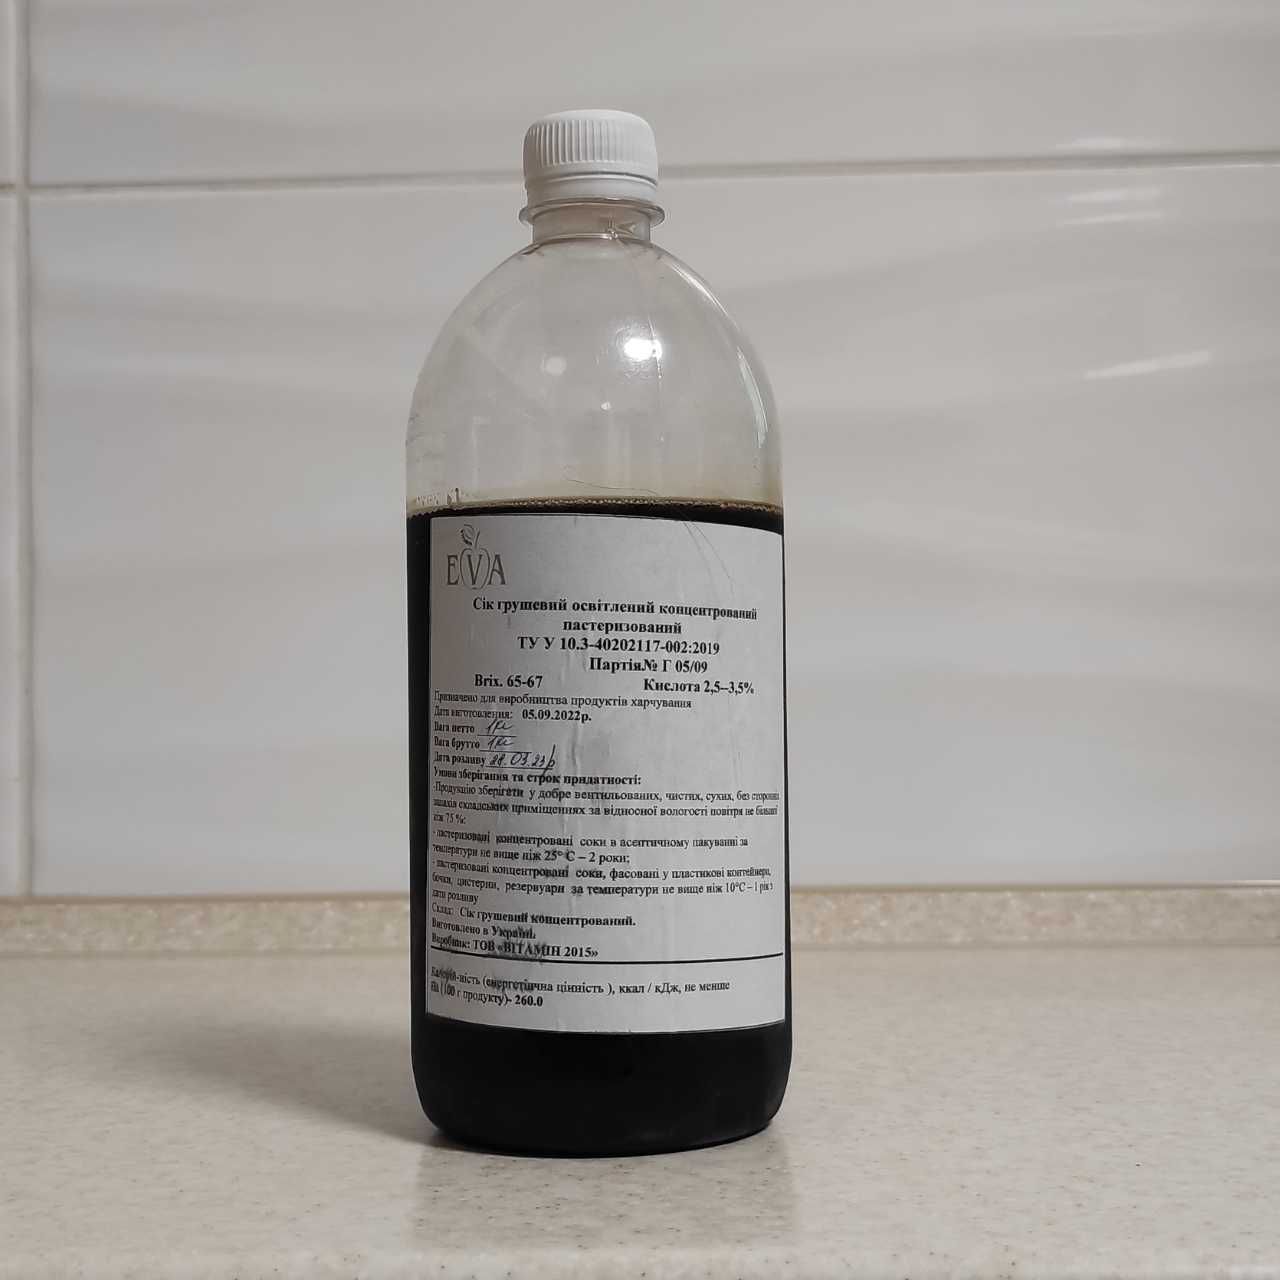 Концентрированный грушевый сок (65-67 ВХ) бутылка 1 кг / 0,76 л